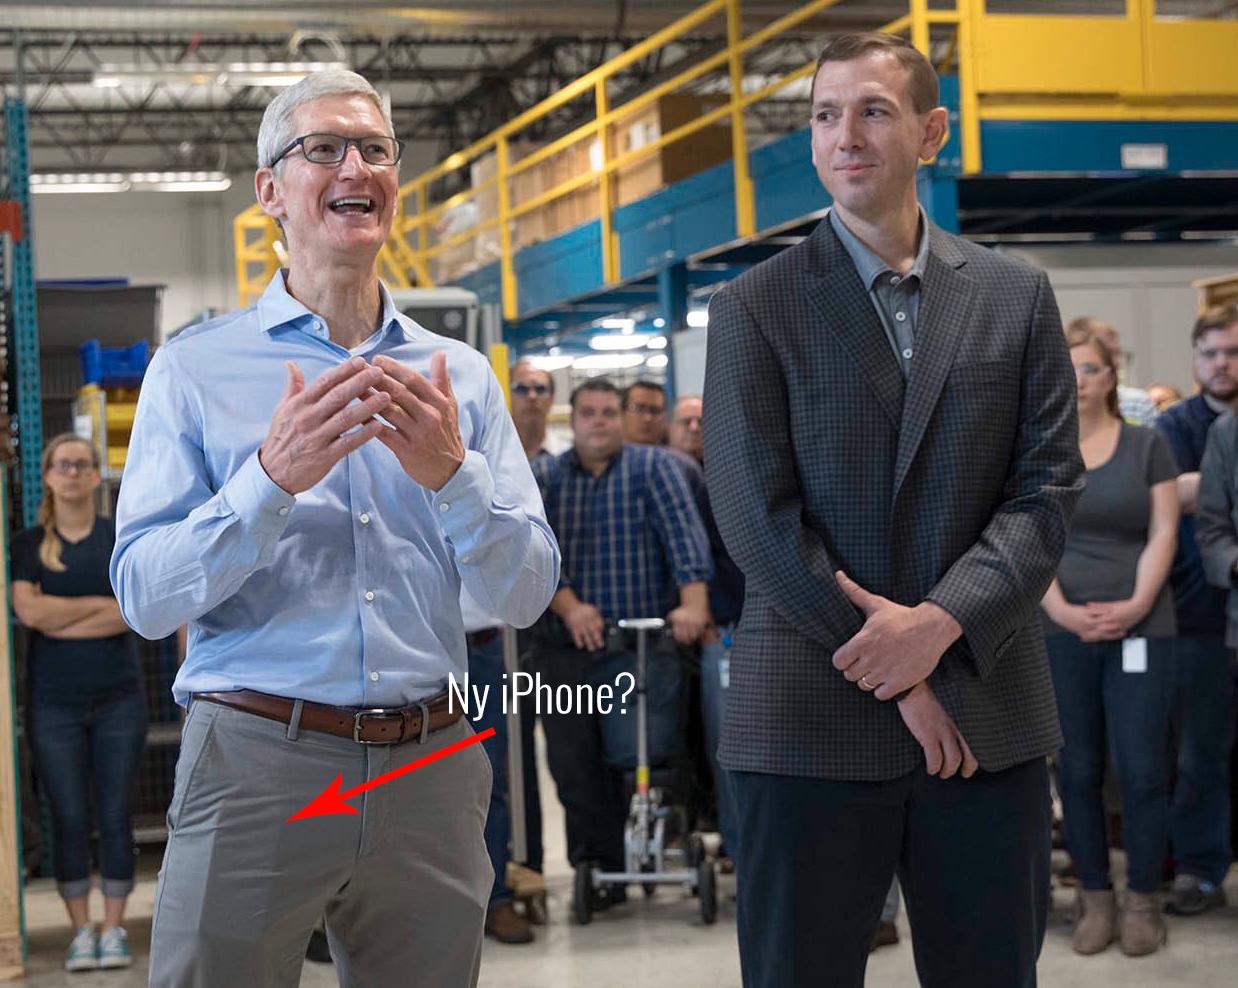 Apropos lengde. Er ikke gjenstanden Tim Cook har i høyrelommen litt vel lang til en iPhone 7 å være? Bildet er tatt denne uken. Bruker han allerede en av de nye telefonene, kanskje?